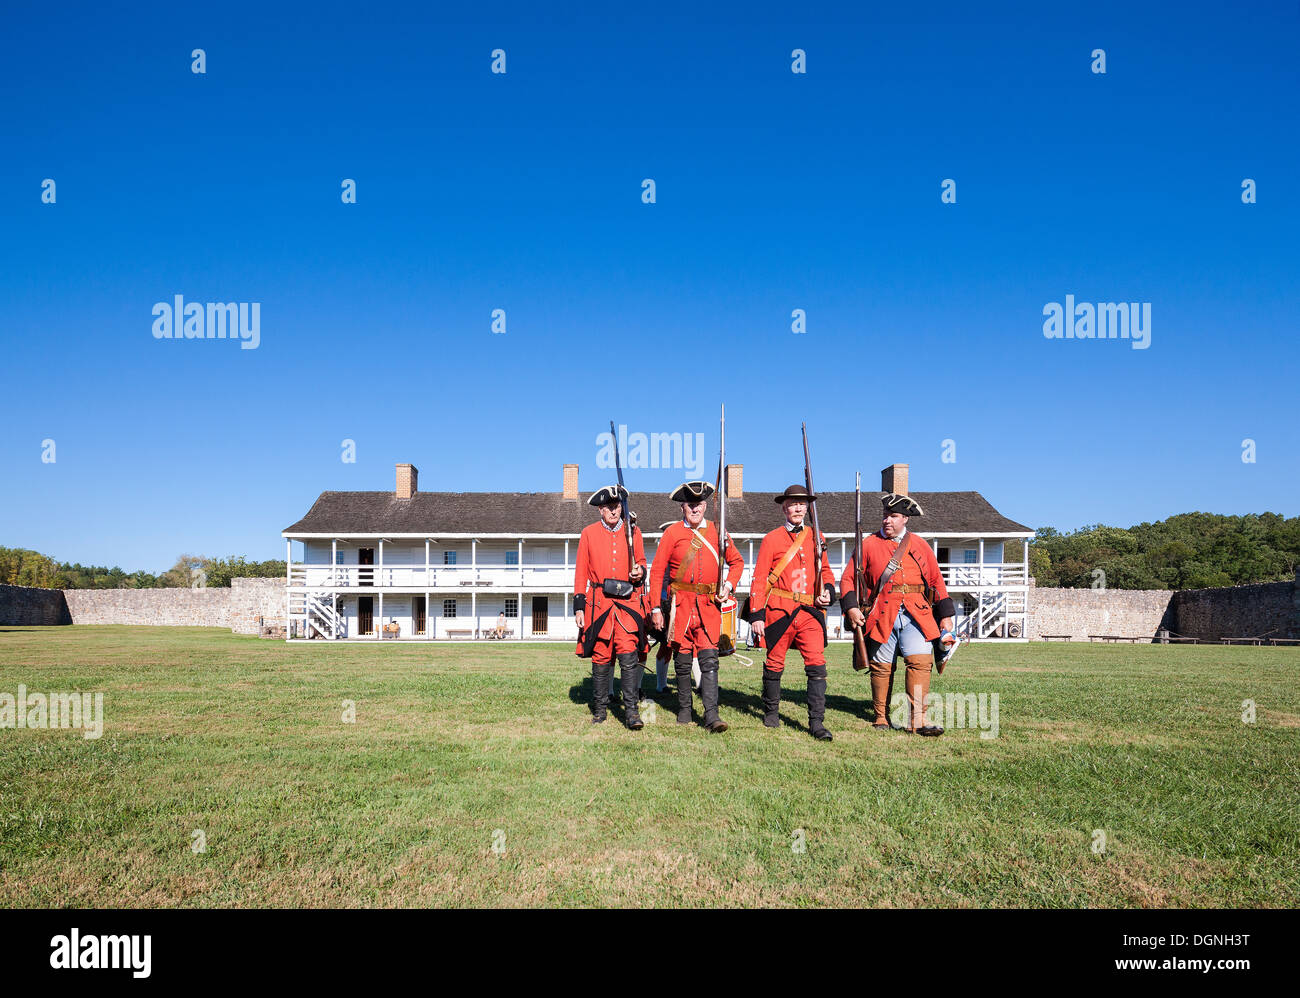 Vida diaria histórica del siglo XVIII en Fort Frederick, Maryland. Los voluntarios de marzo con uniformes de la época y mosquetes. Este cuartel. Foto de stock